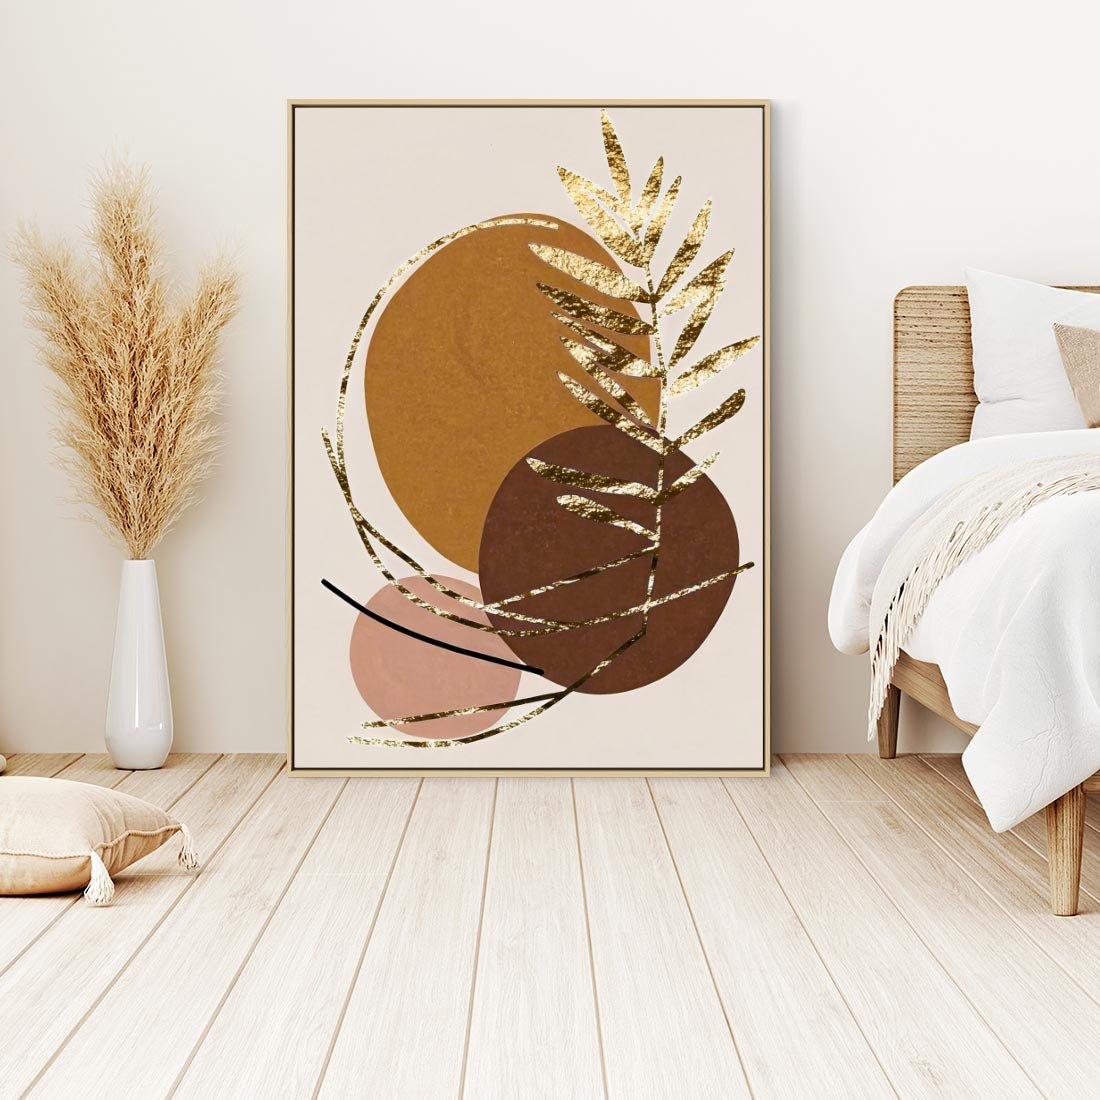 Obraz w ramie 50x70 - Taniec Przenikających Odbić - abstrakcyjny obraz, złote liście palmy - rama drewno